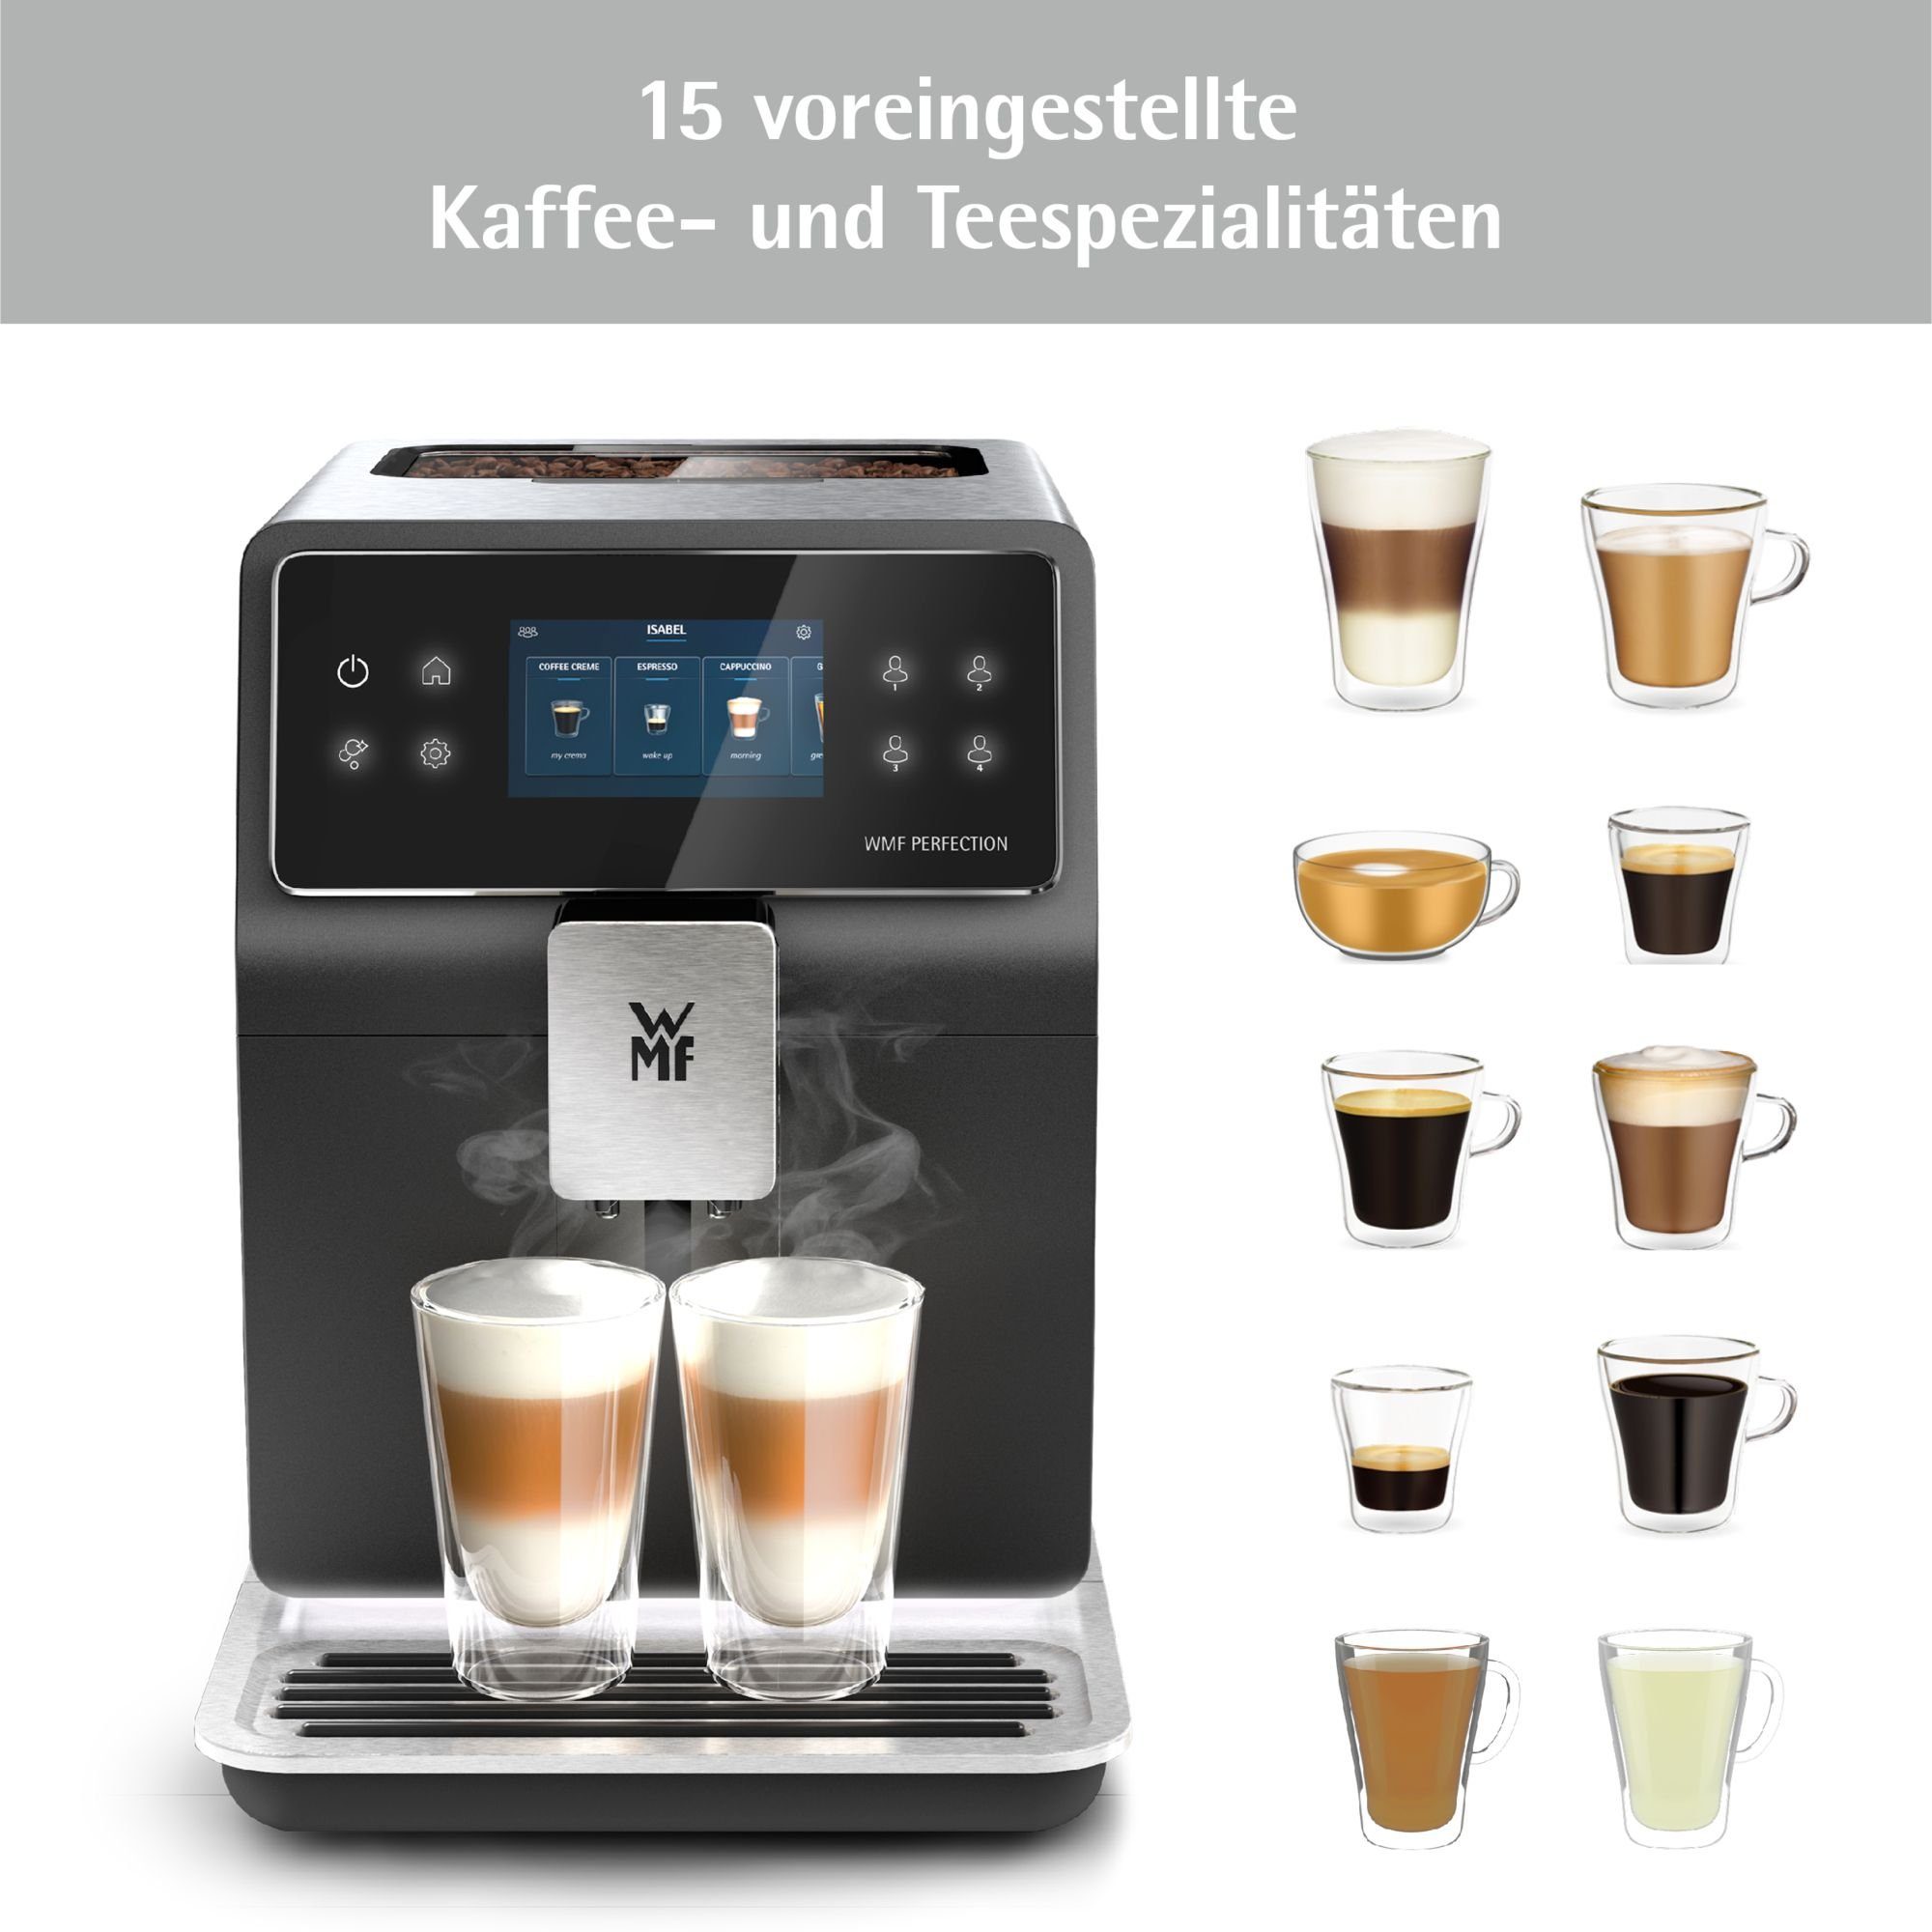 Thermoblock, Perfection 1l 18 Double Getränkespezialitäten, Kaffeevollautomat Milchbehälter 880L, WMF